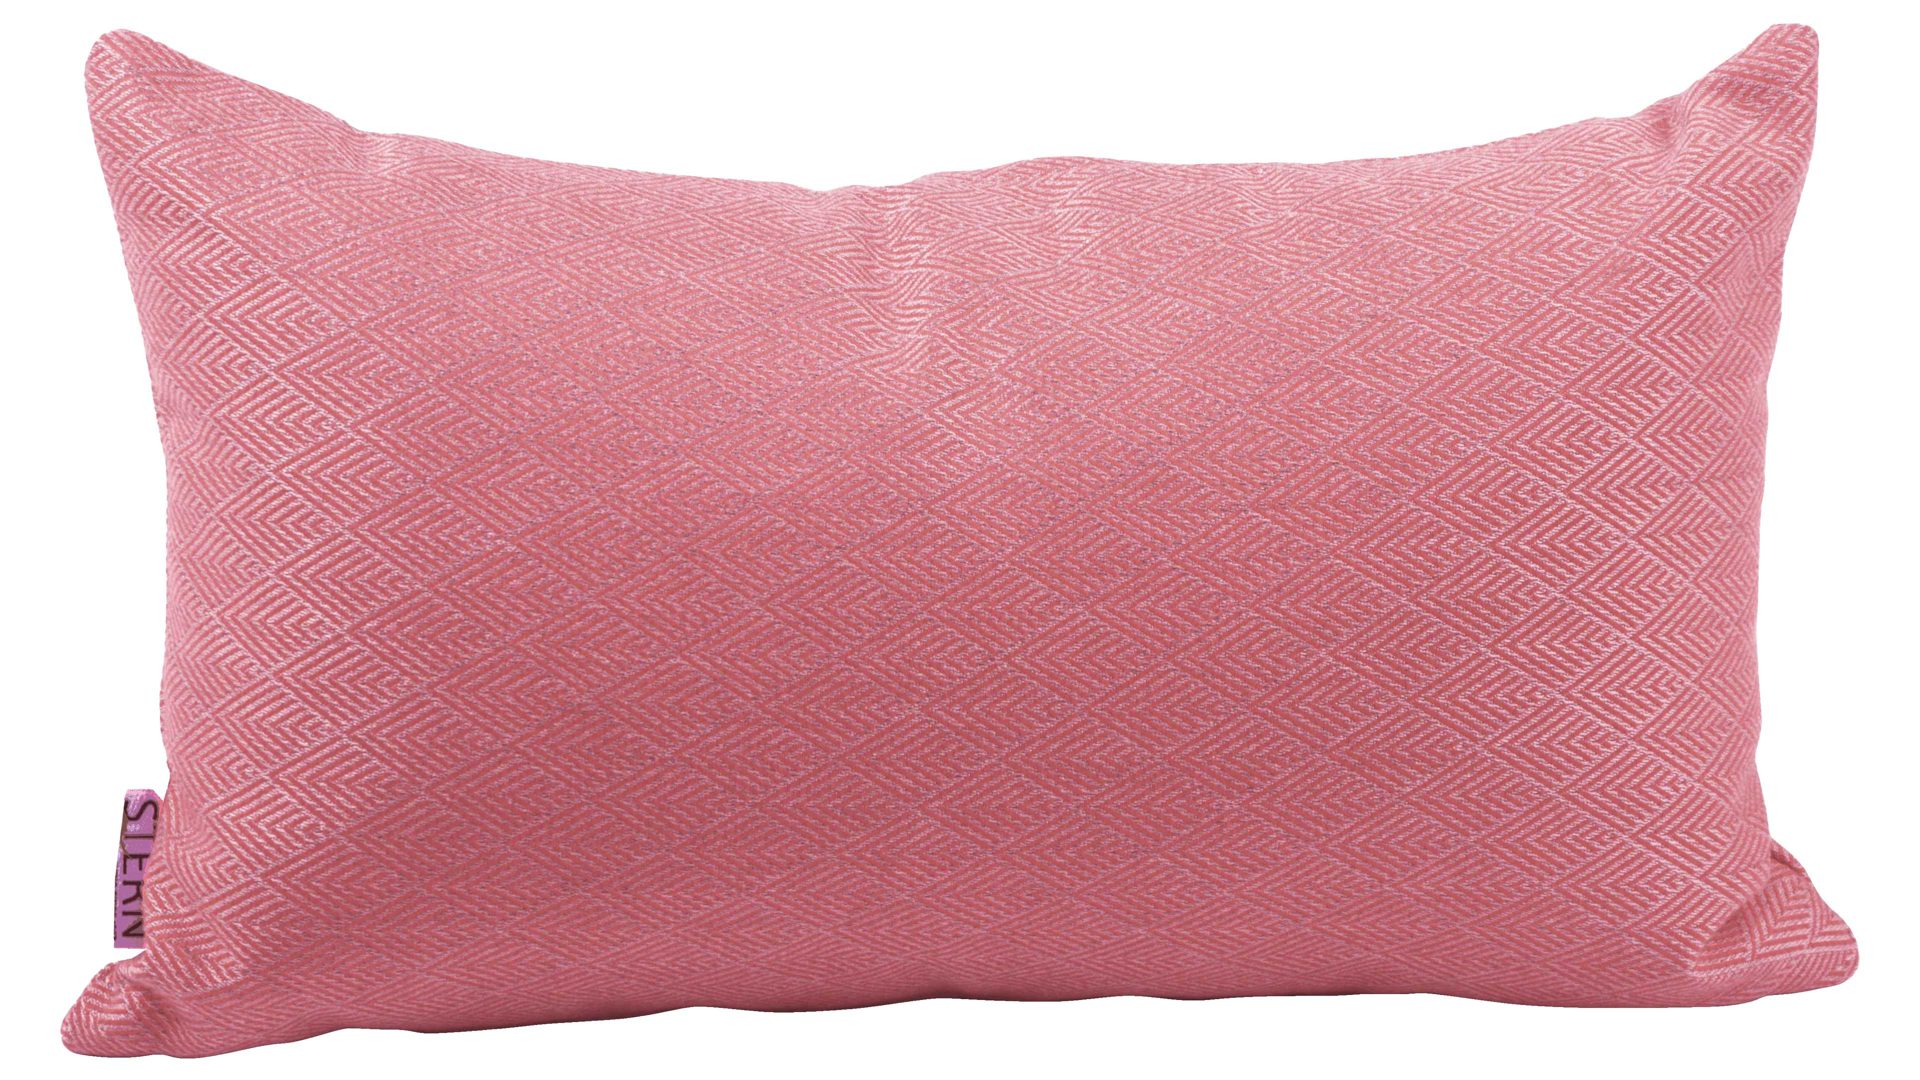 Einzelkissen Stern® aus Kunstfaser in Pink STERN® Gartentextilen Serie pinkes Rautenmuster - ca. 55 x 35 cm